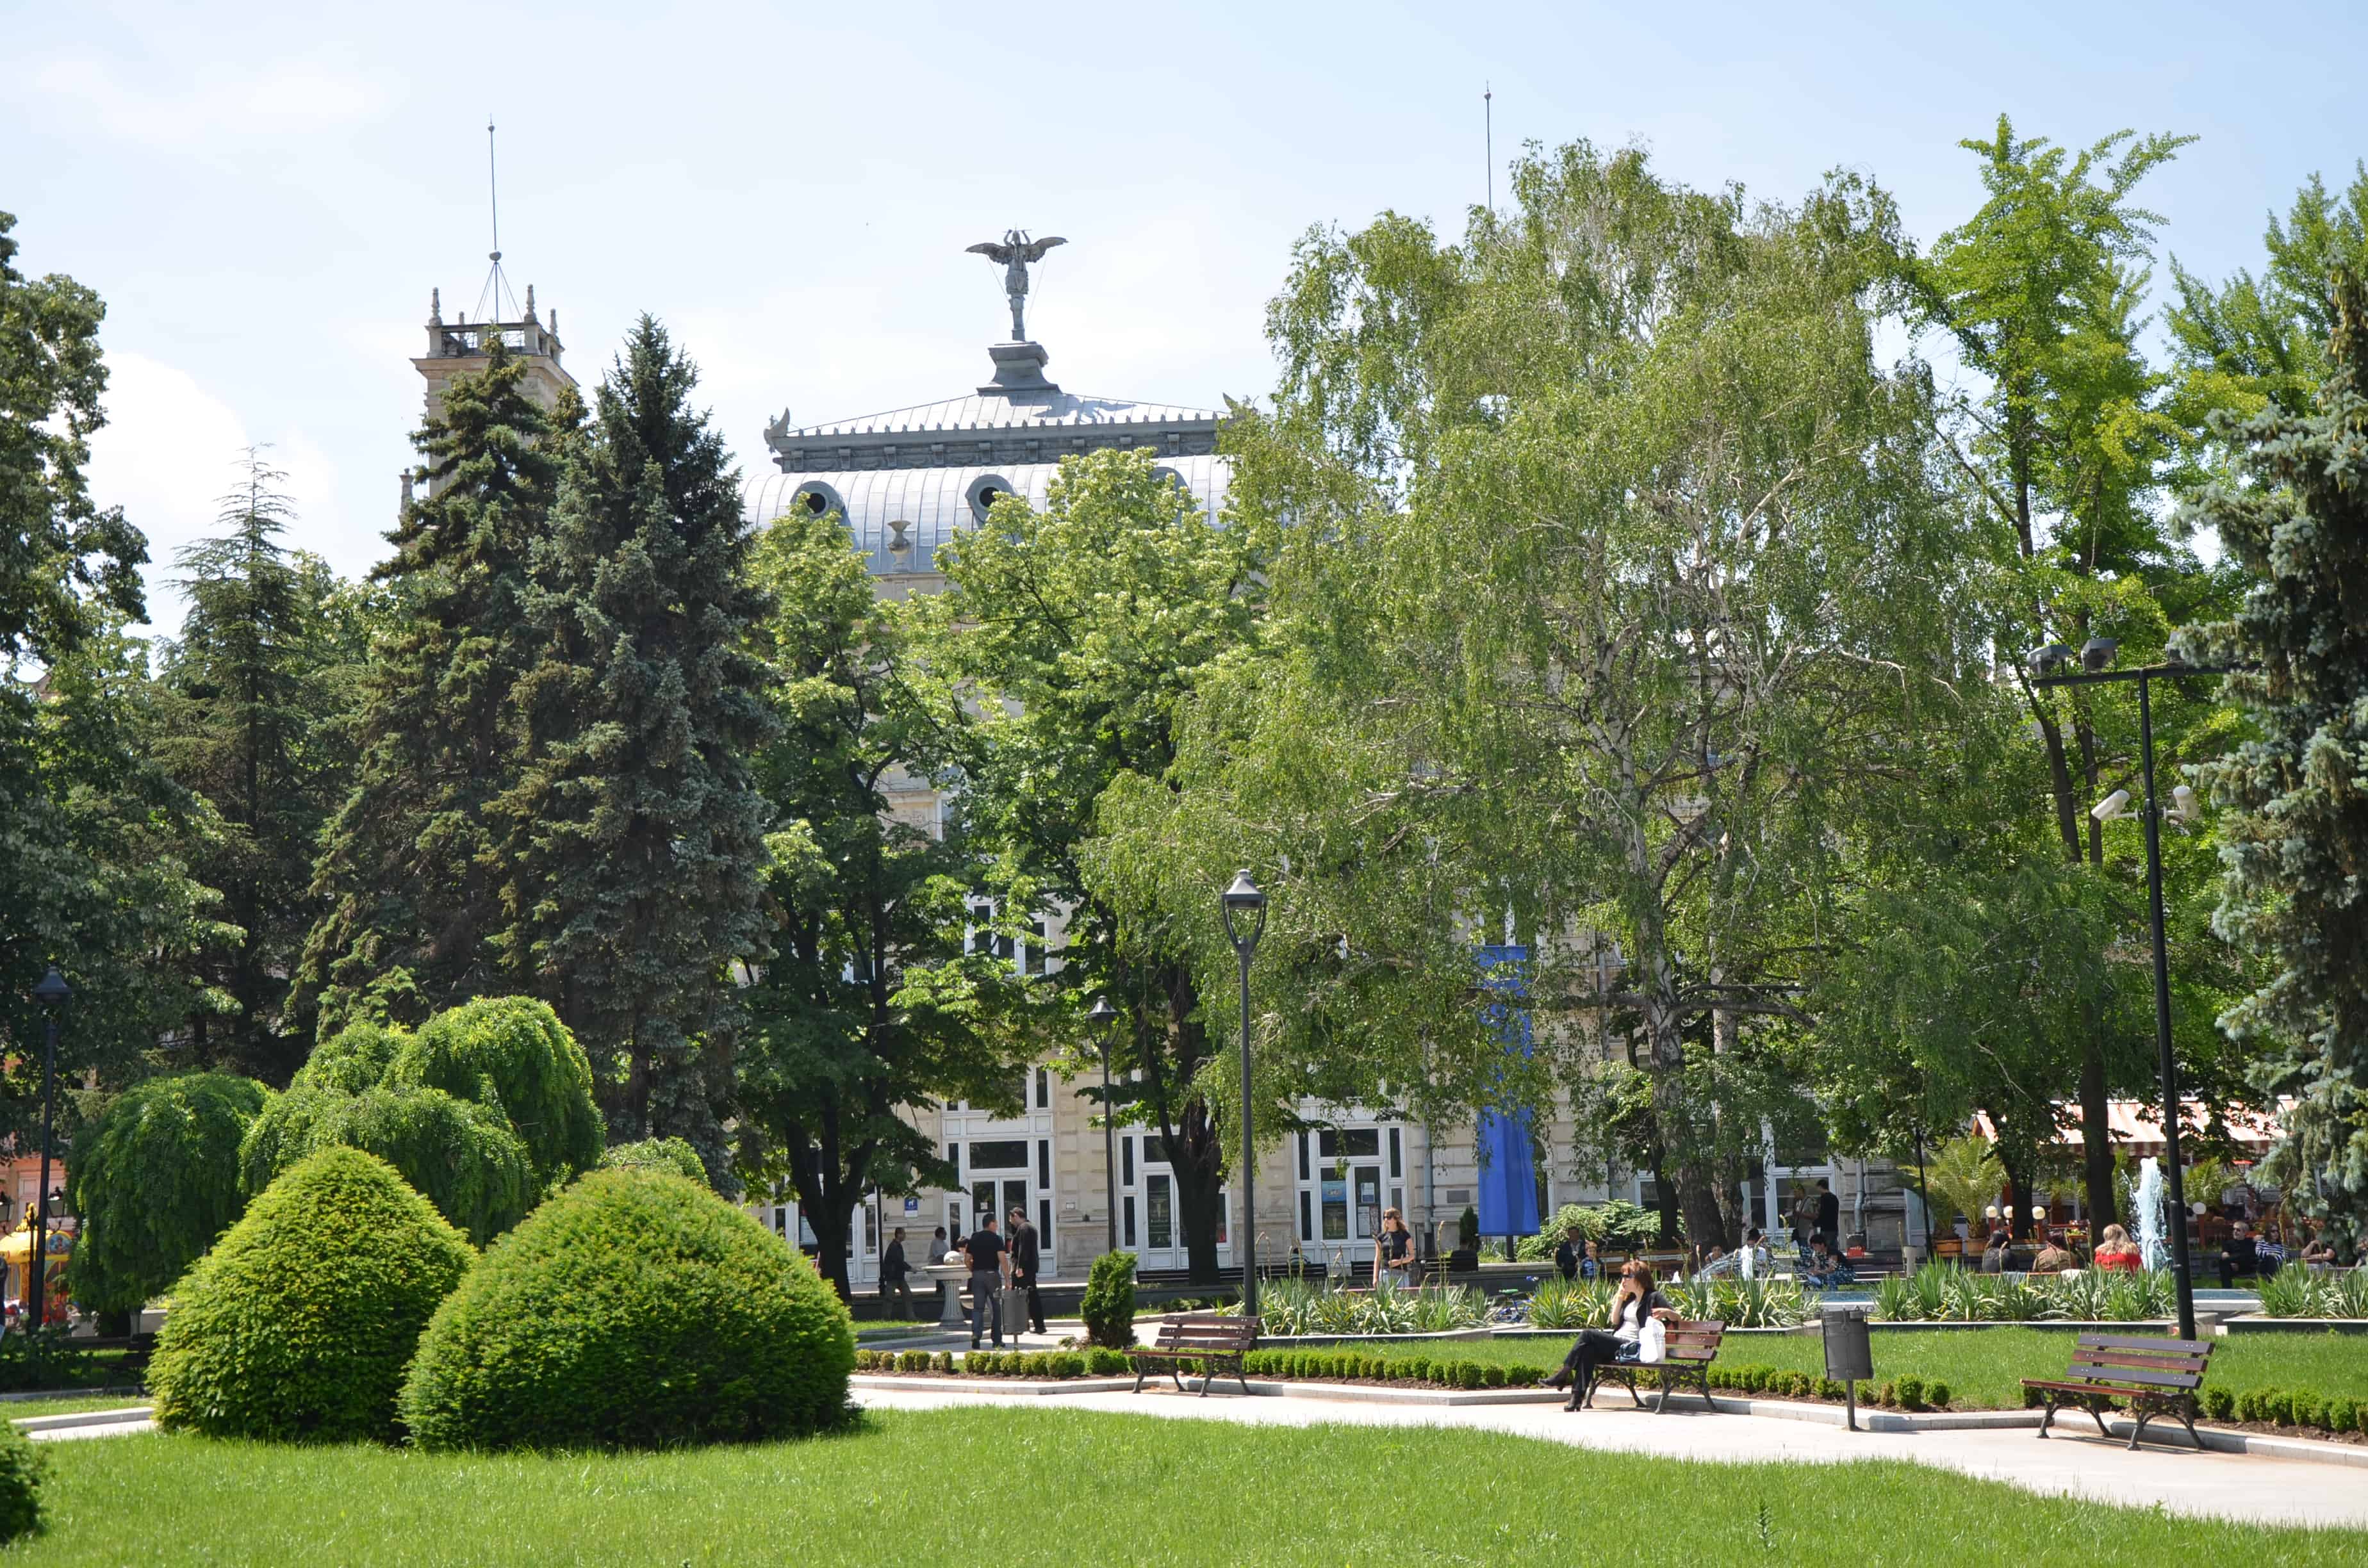 Ploshtad Svoboda (Liberation Square) in Ruse, Bulgaria